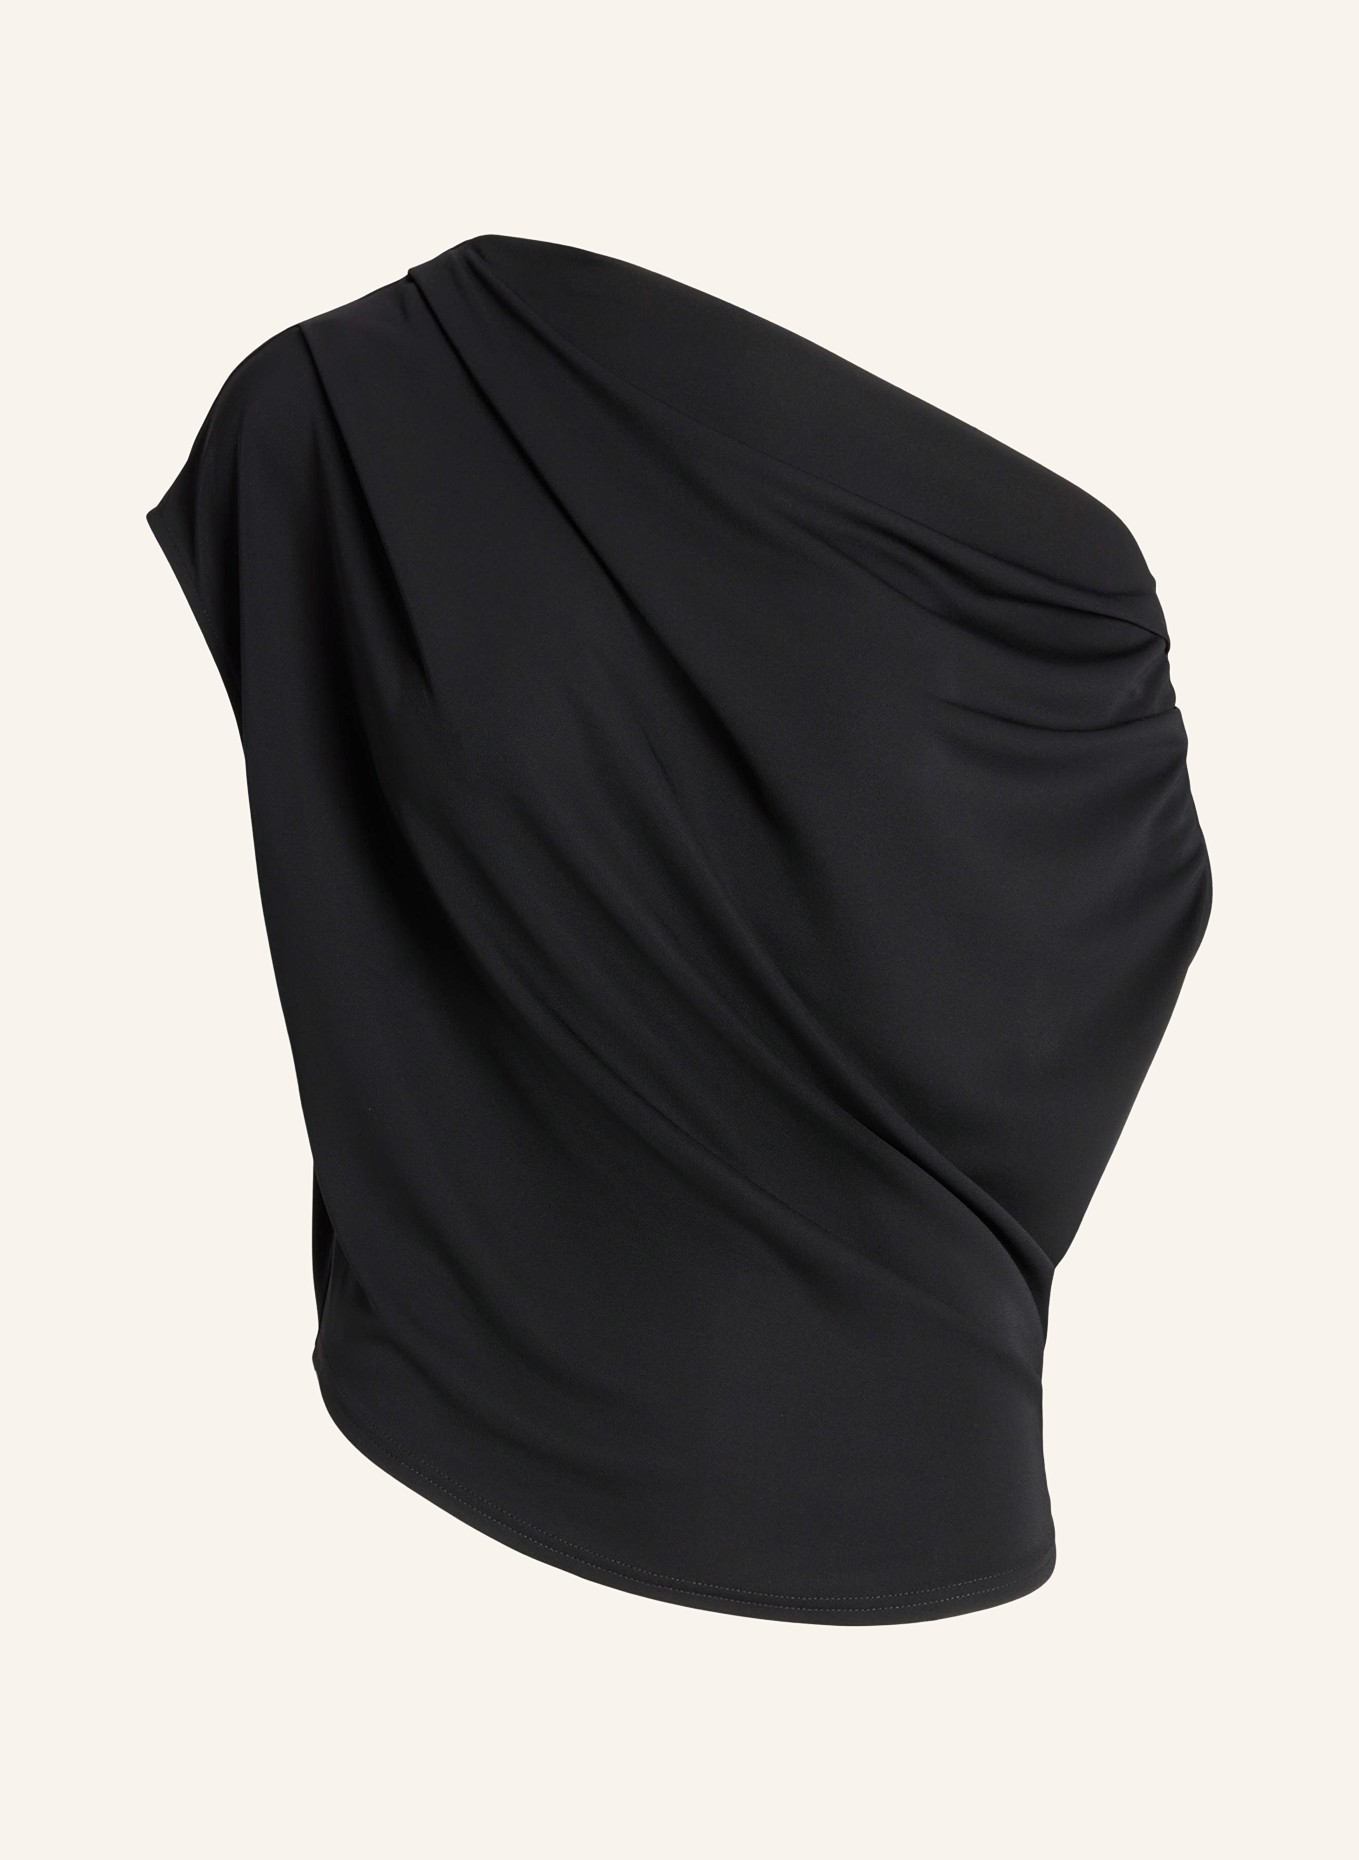 LAUREN RALPH LAUREN One-shoulder top, Color: BLACK (Image 1)